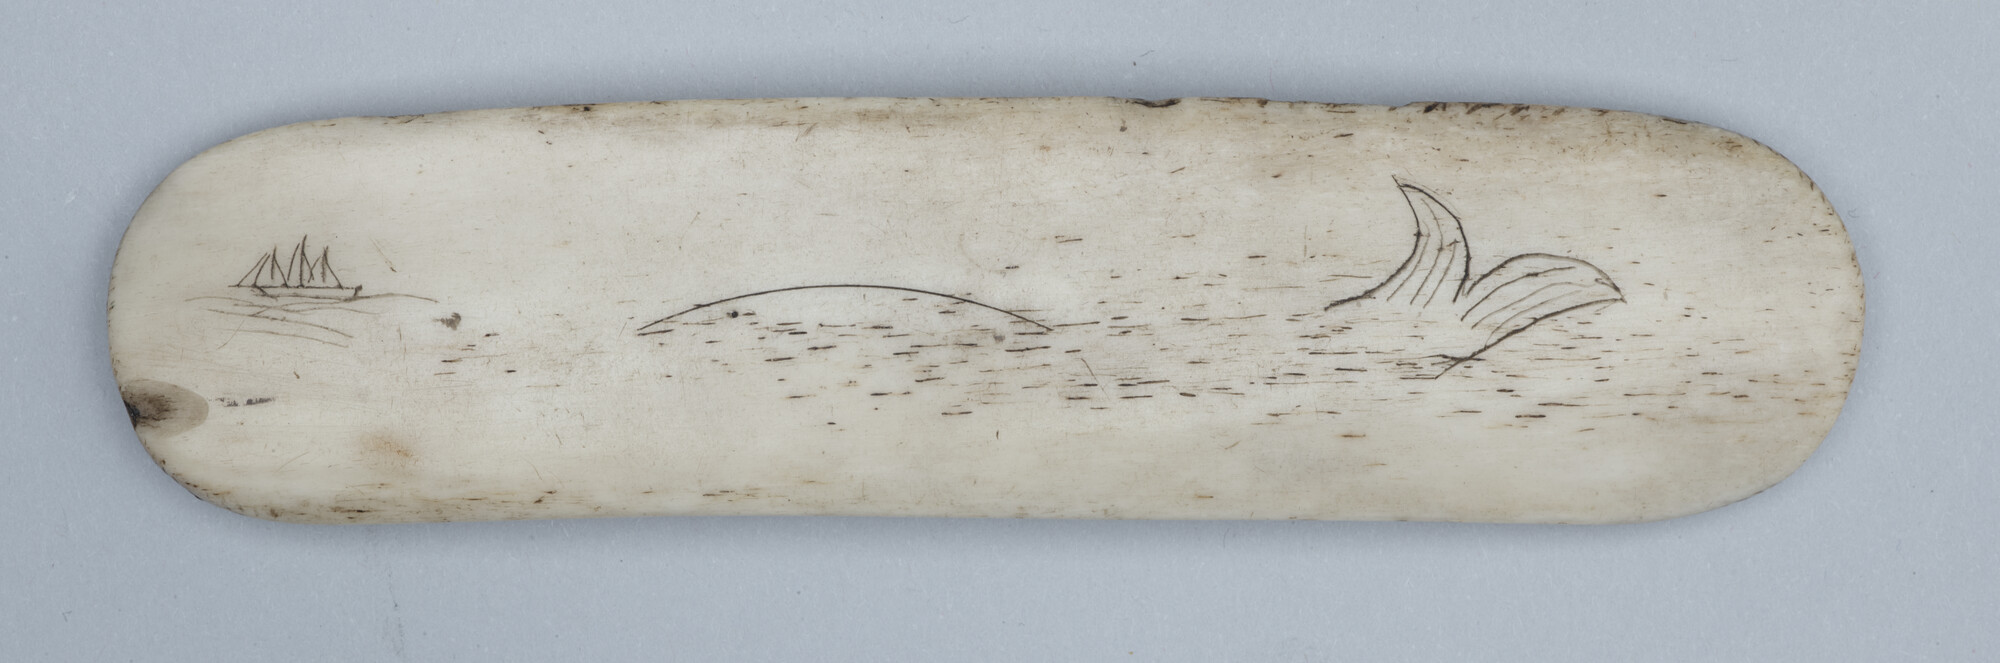 2019.0433; Plaque van walvisbeen met afbeelding (scrimshaw); scrimshaw